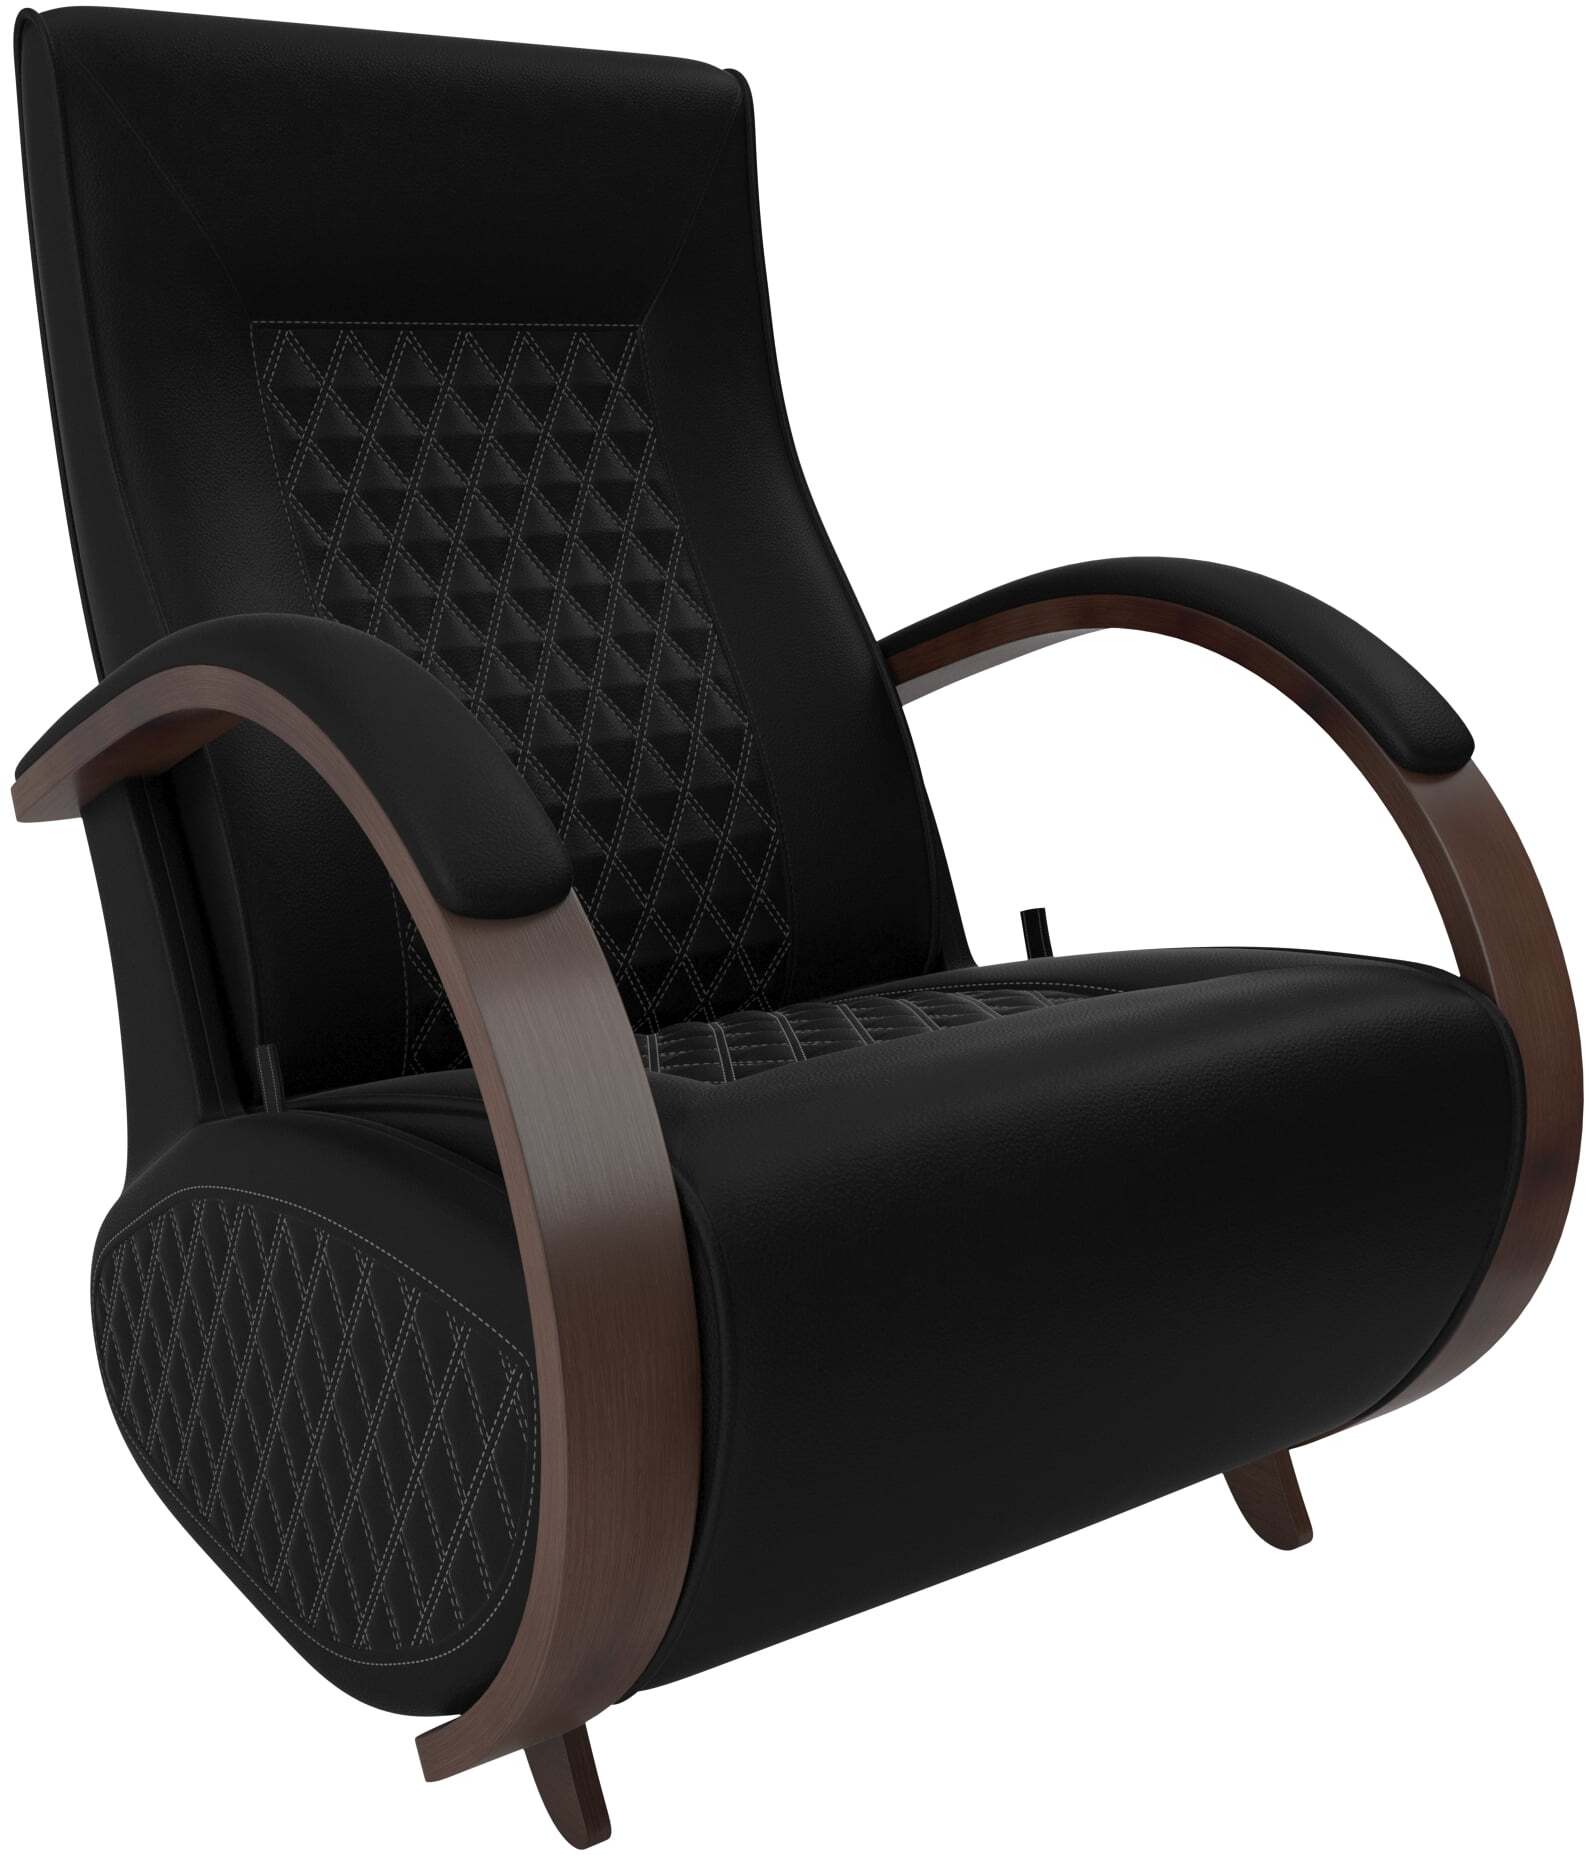 Кресло-качалка глайдер Balance-3 с накладками фото 1